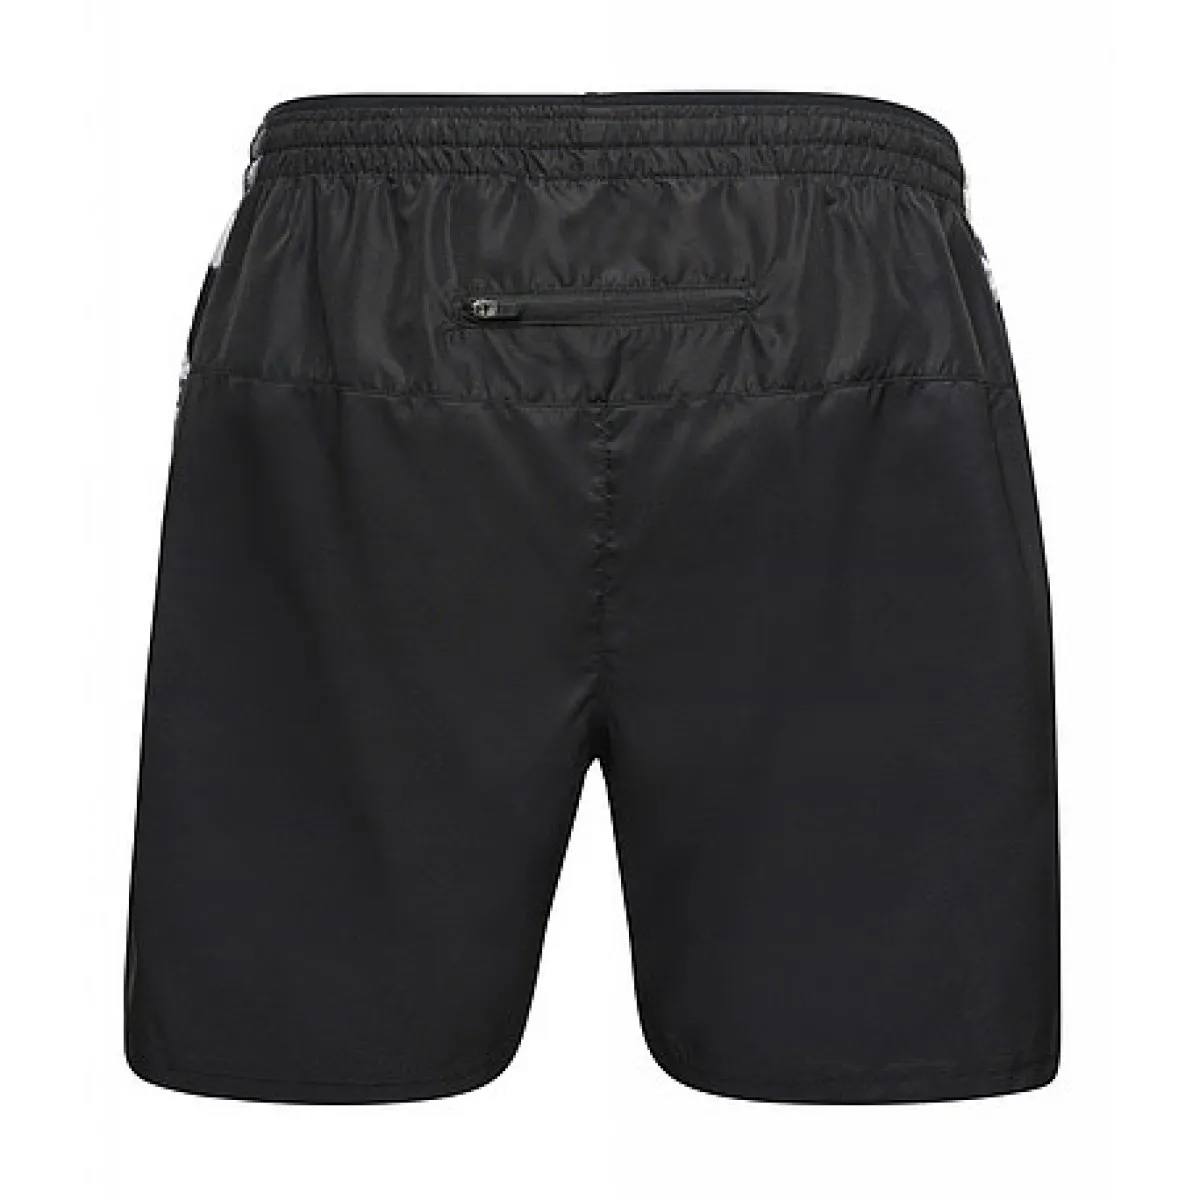 black printed shorts